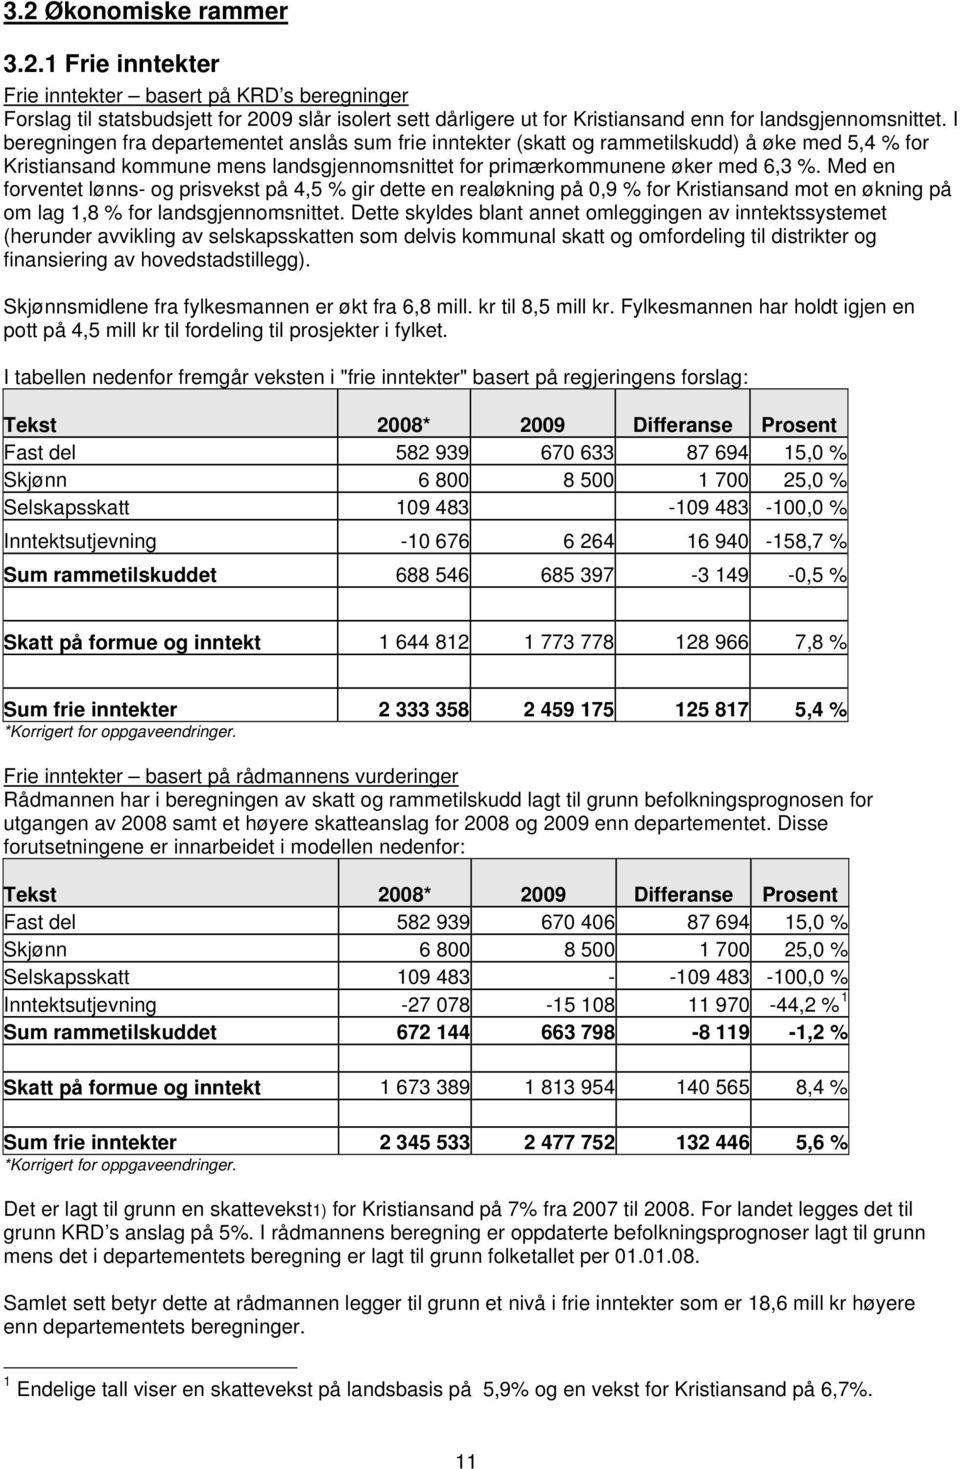 Med en forentet lønns- og prisekst på 4,5 % gir dette en realøkning på 0,9 % for Kristiansand mot en økning på om lag 1,8 % for landsgjennomsnittet.